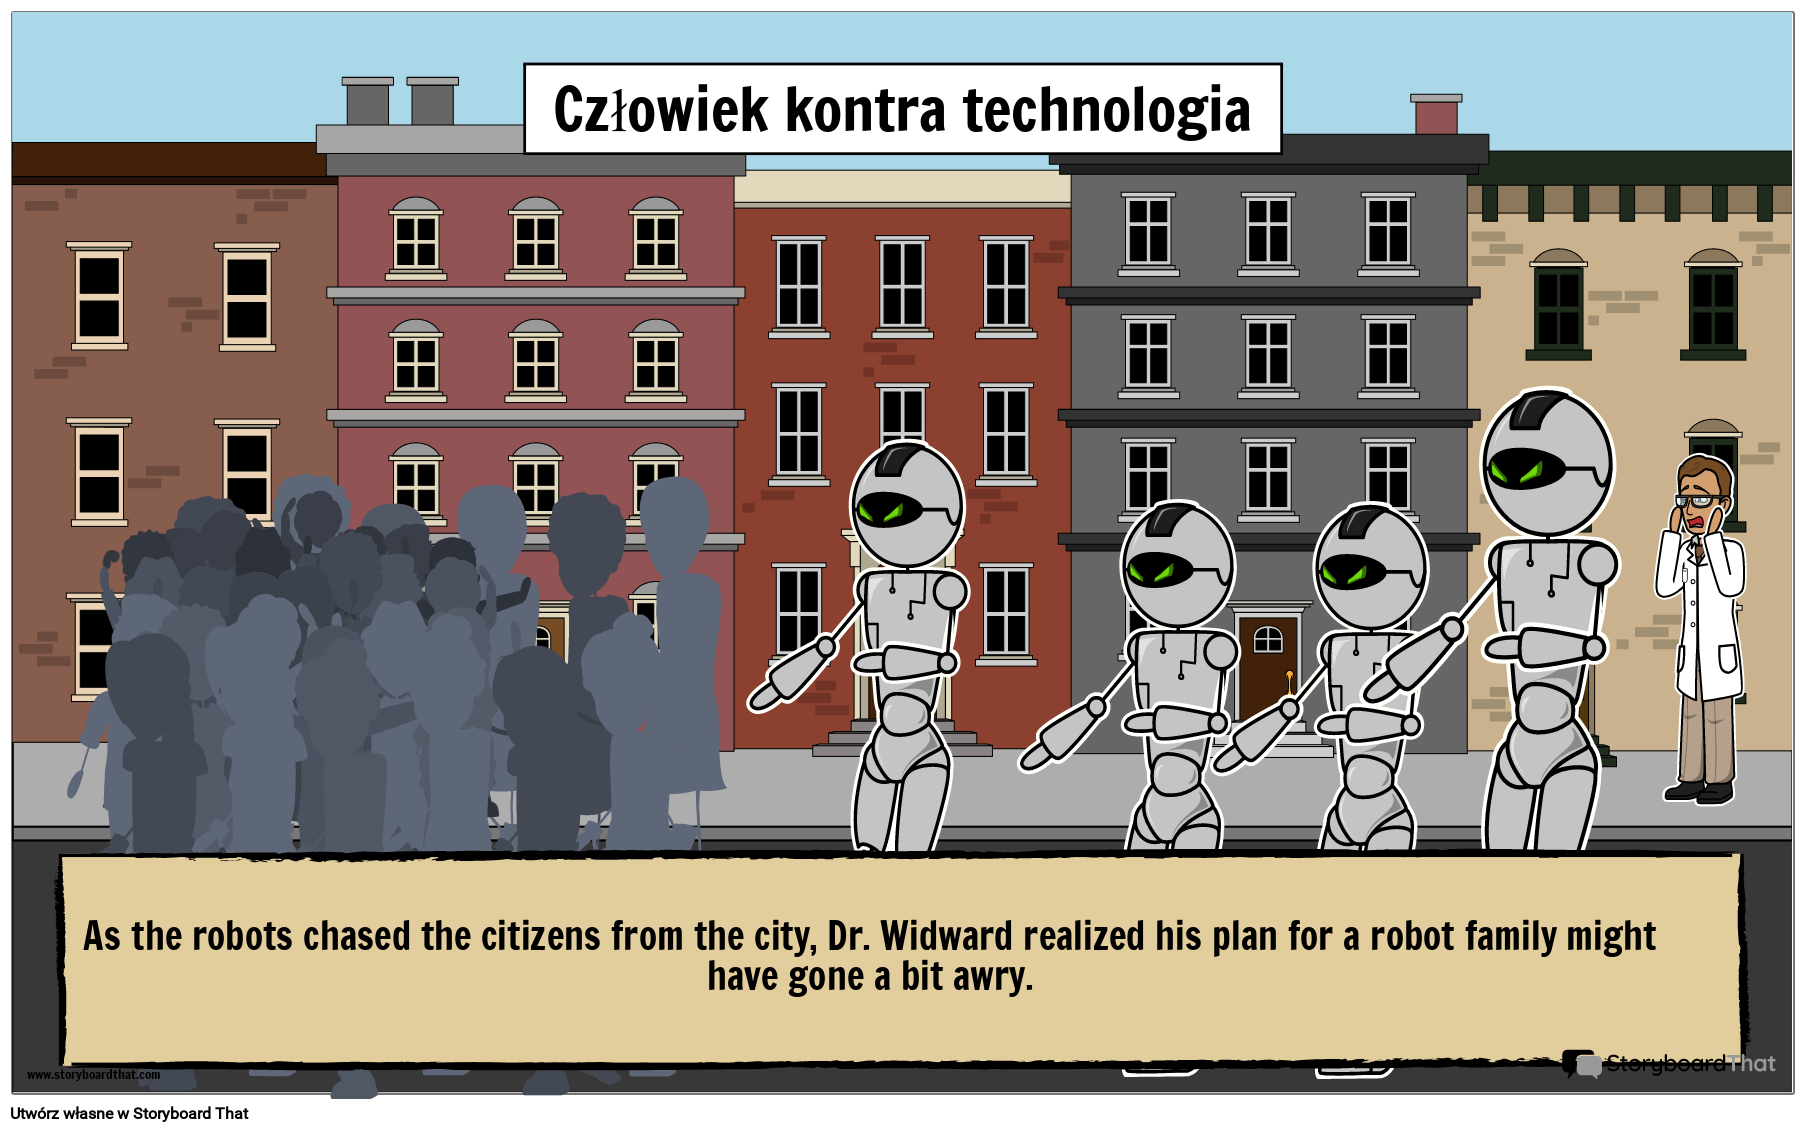 Ilustrujący Plakat Przedstawiający Konflikt Postaci z Technologią